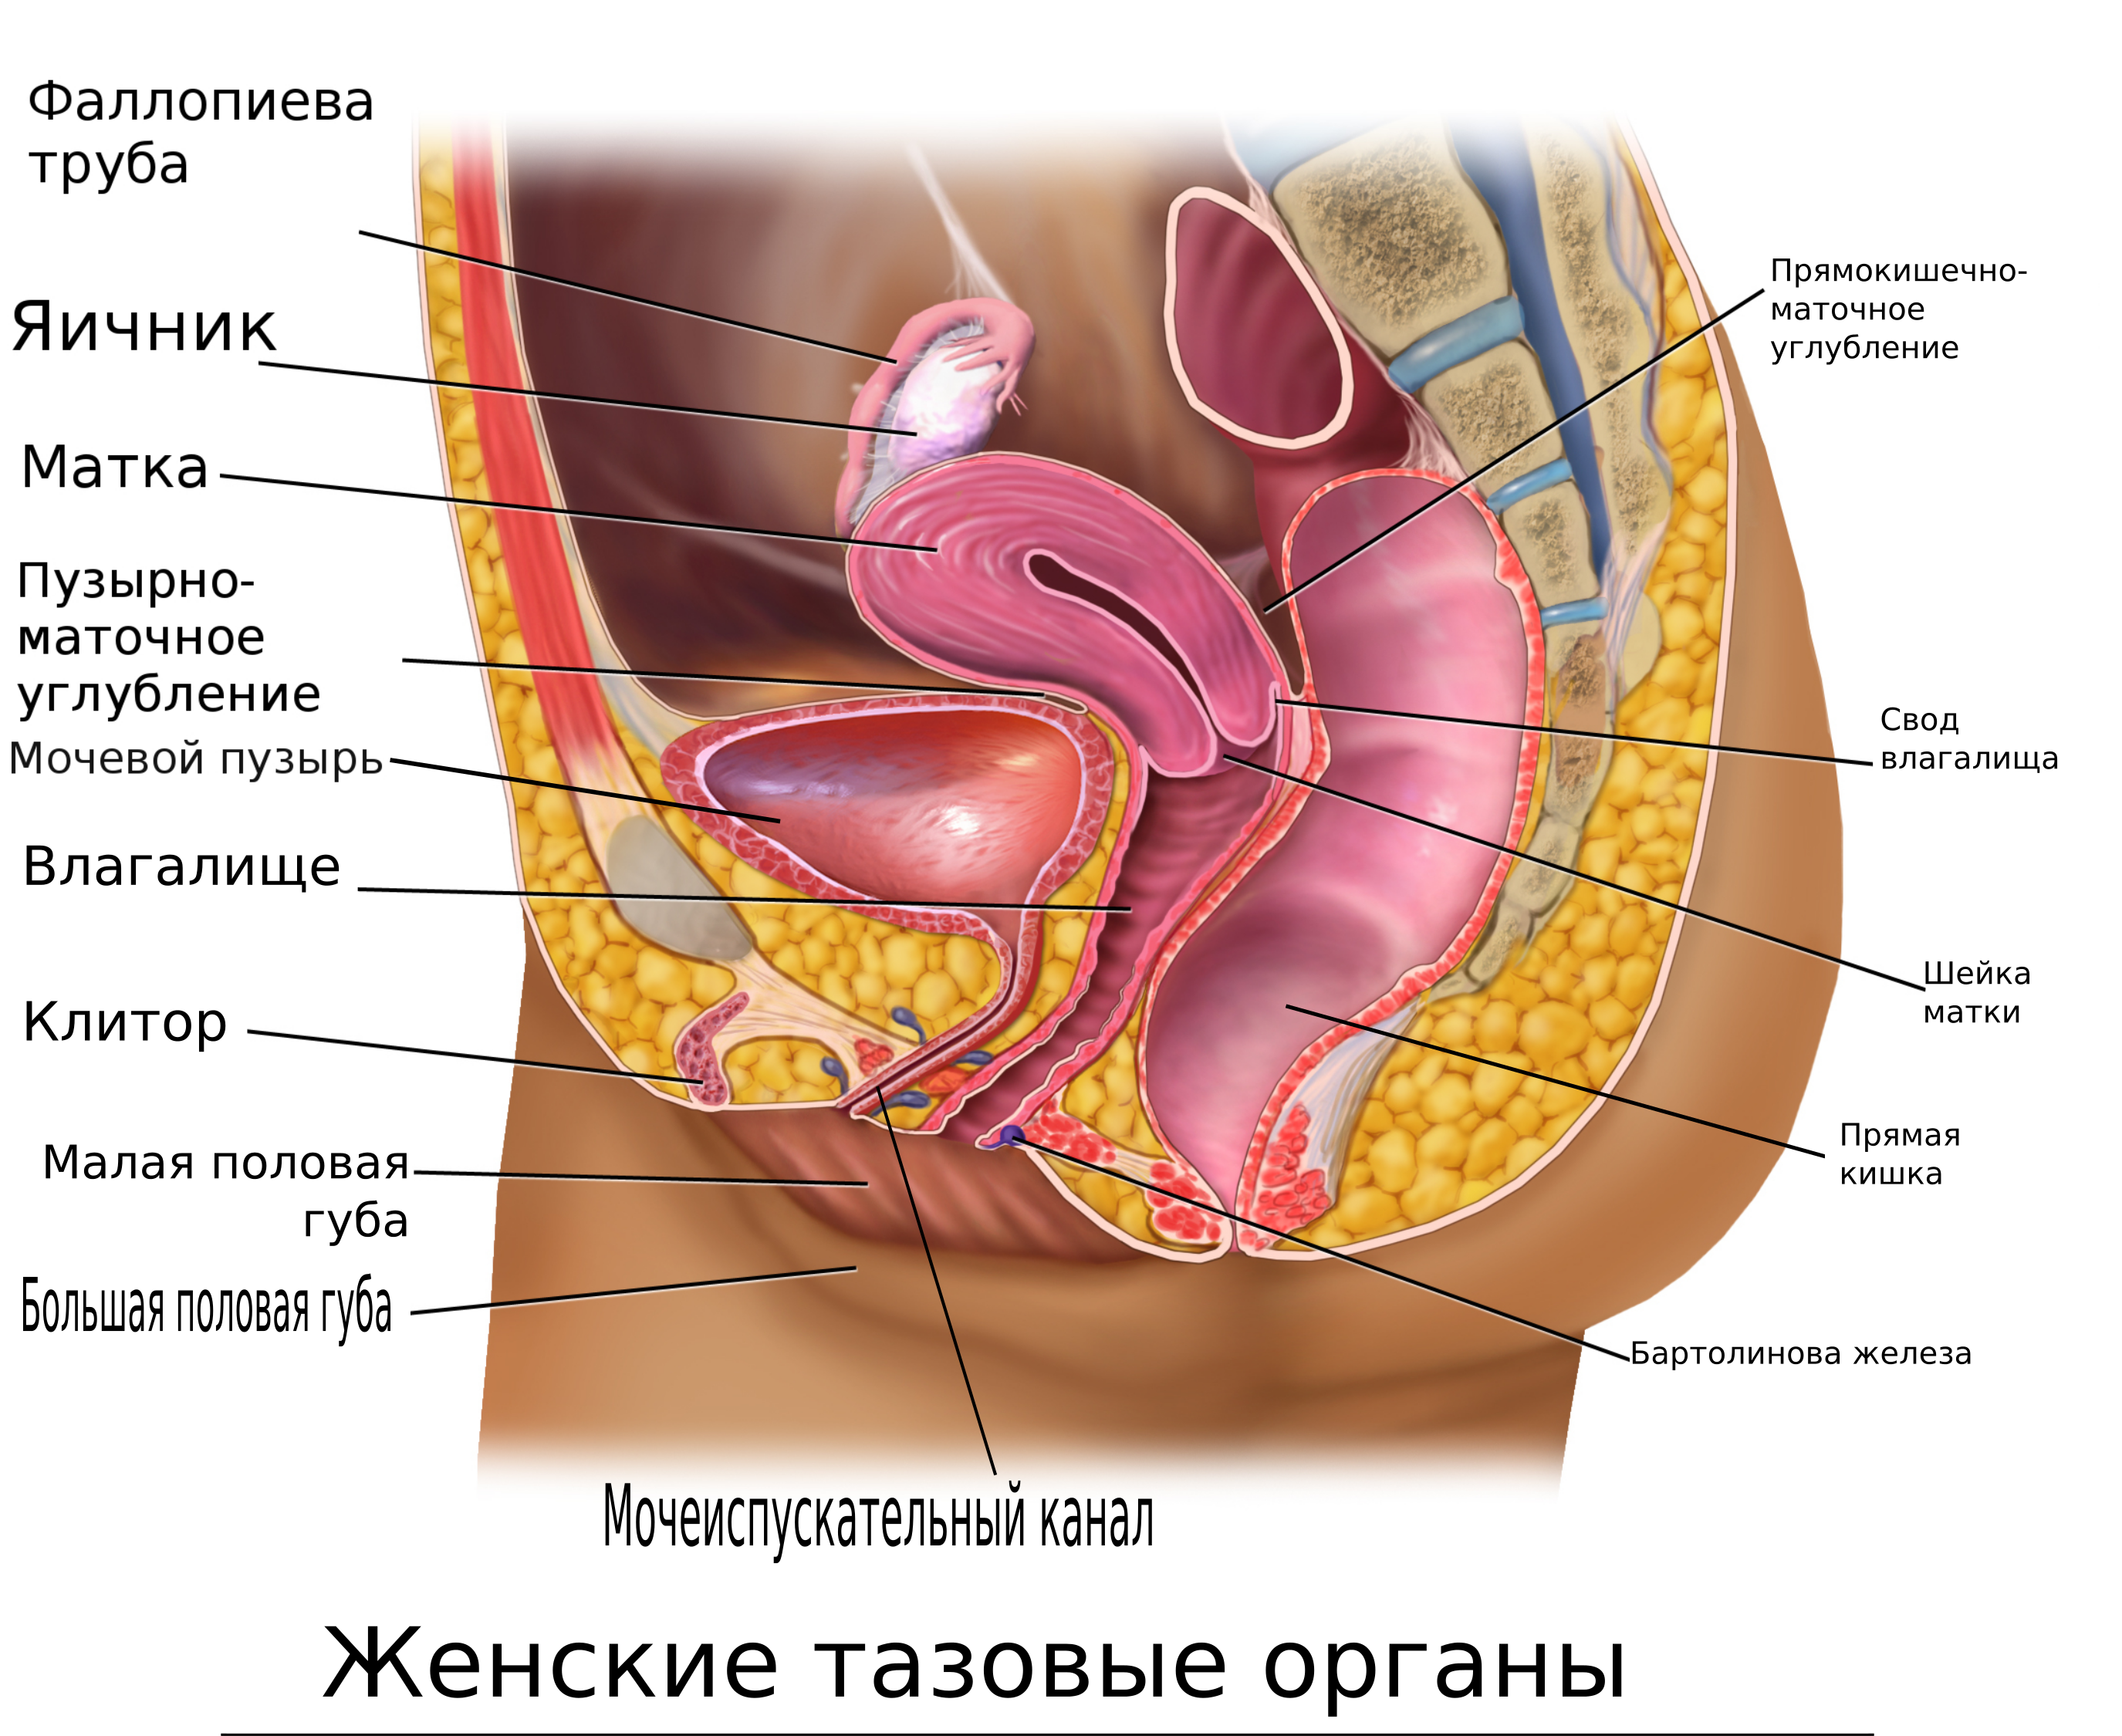 Анатомия женского клитора. Строение органа